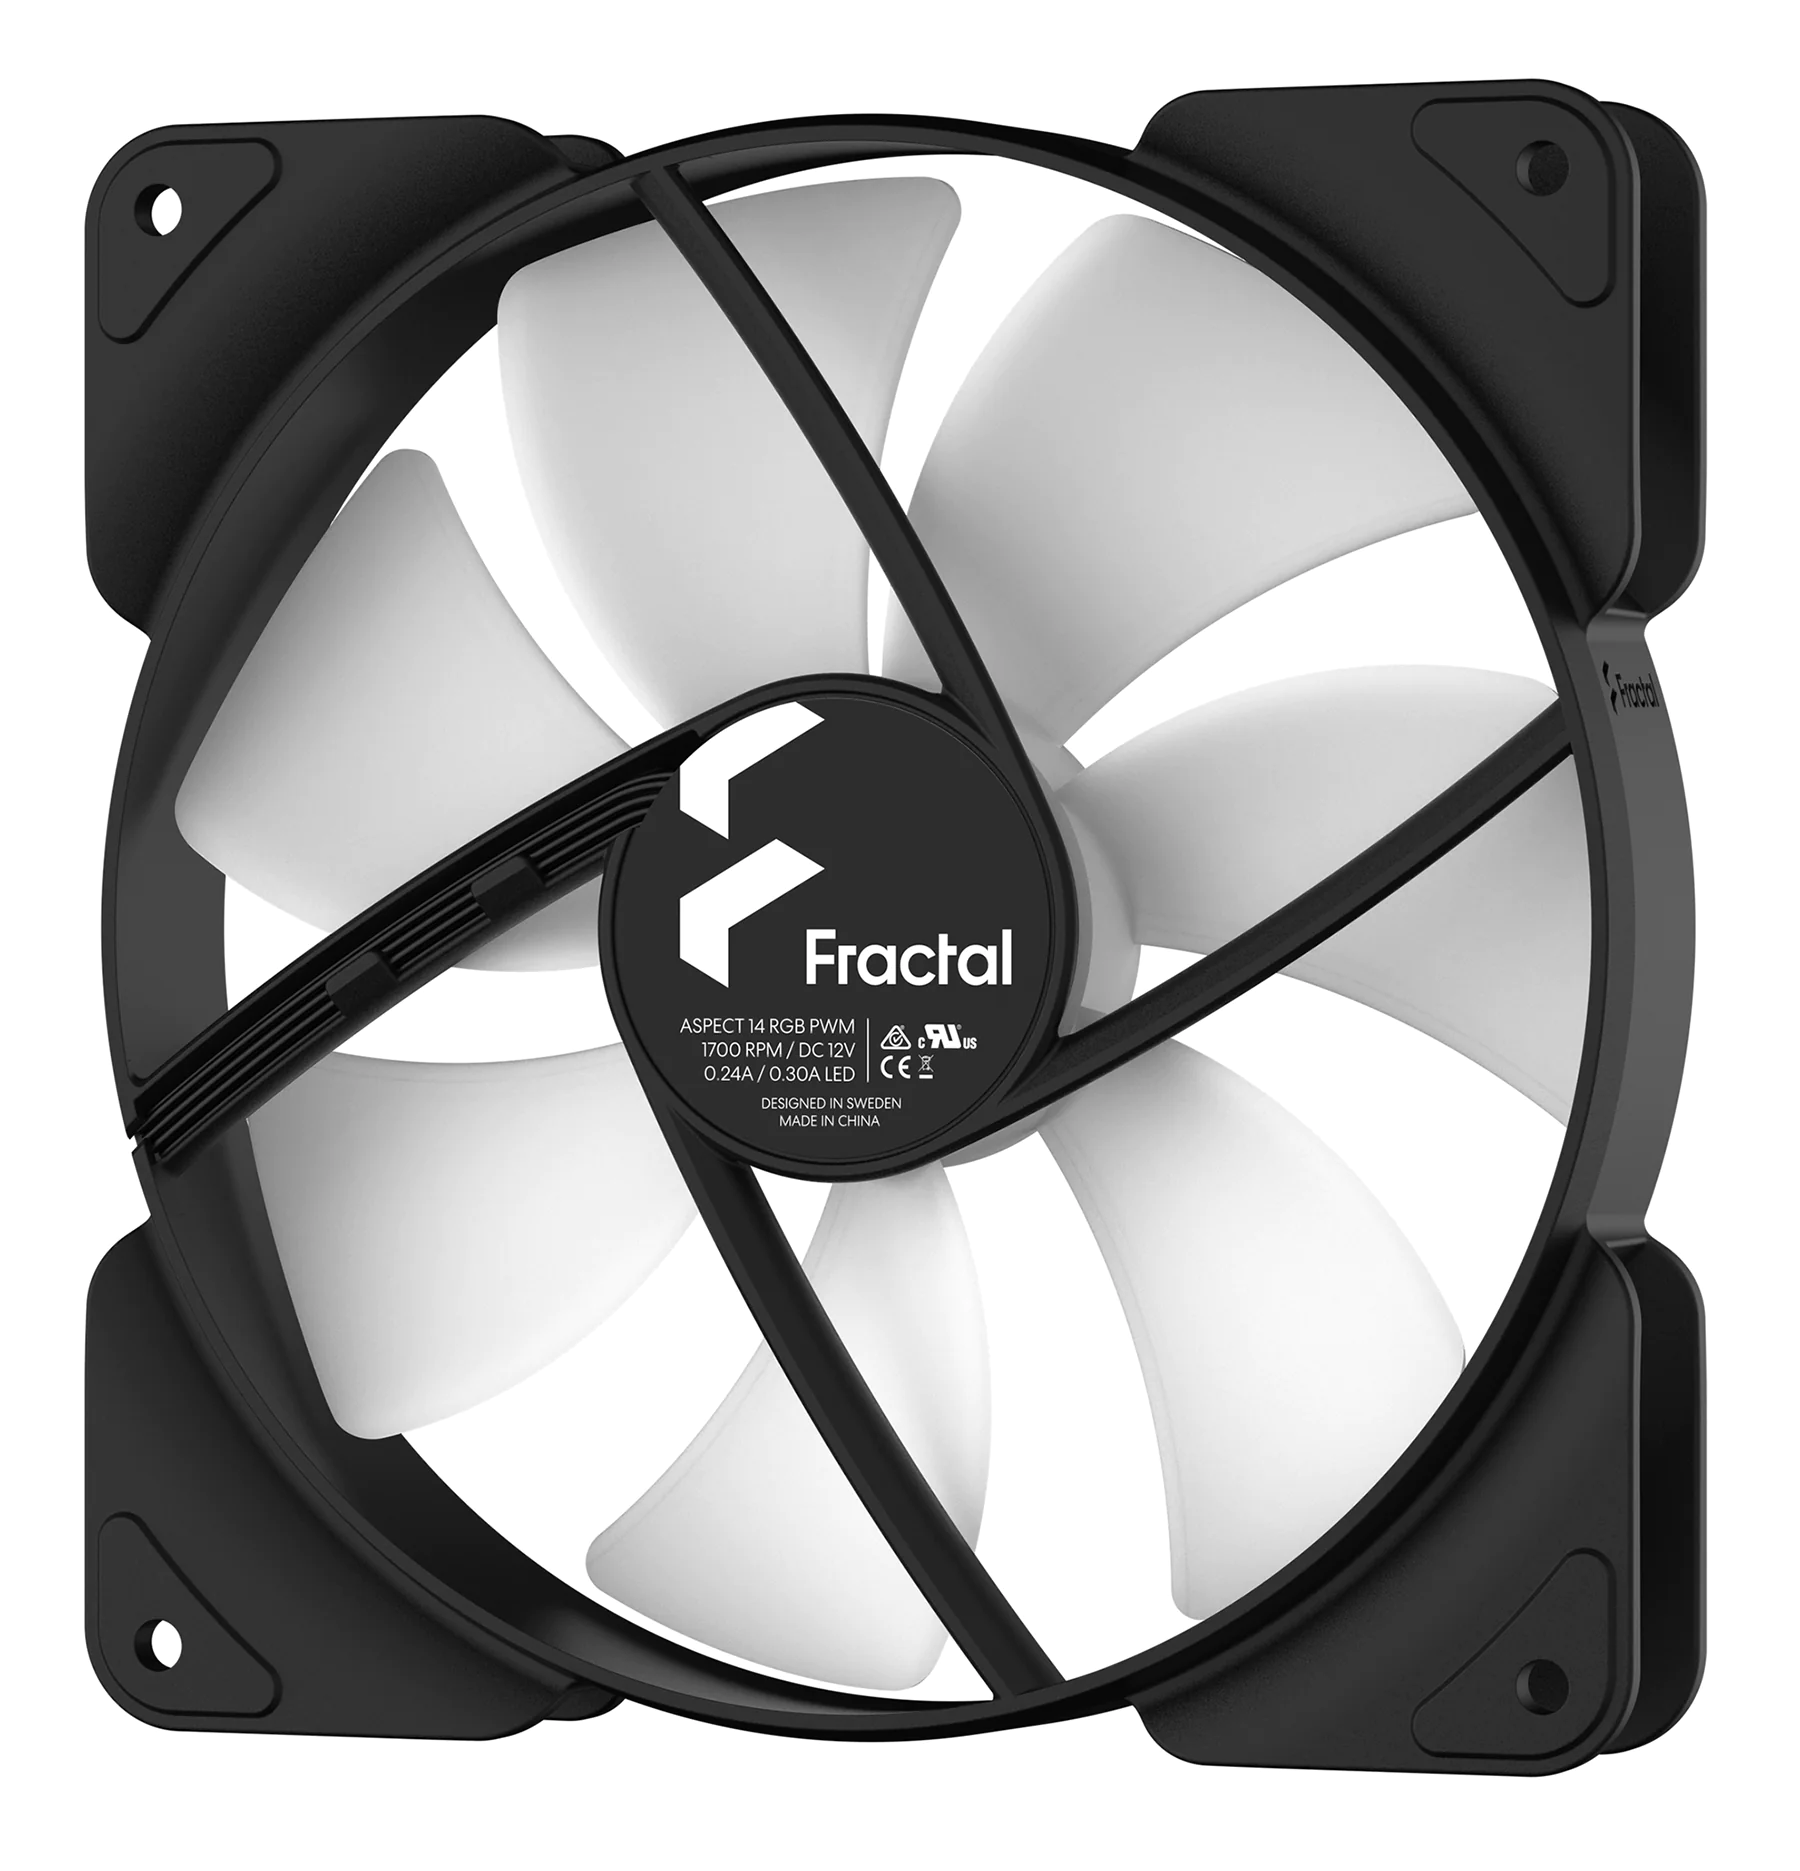 Вентилятор Fractal Design Aspect 14 RGB PWM Black - изображение № 2